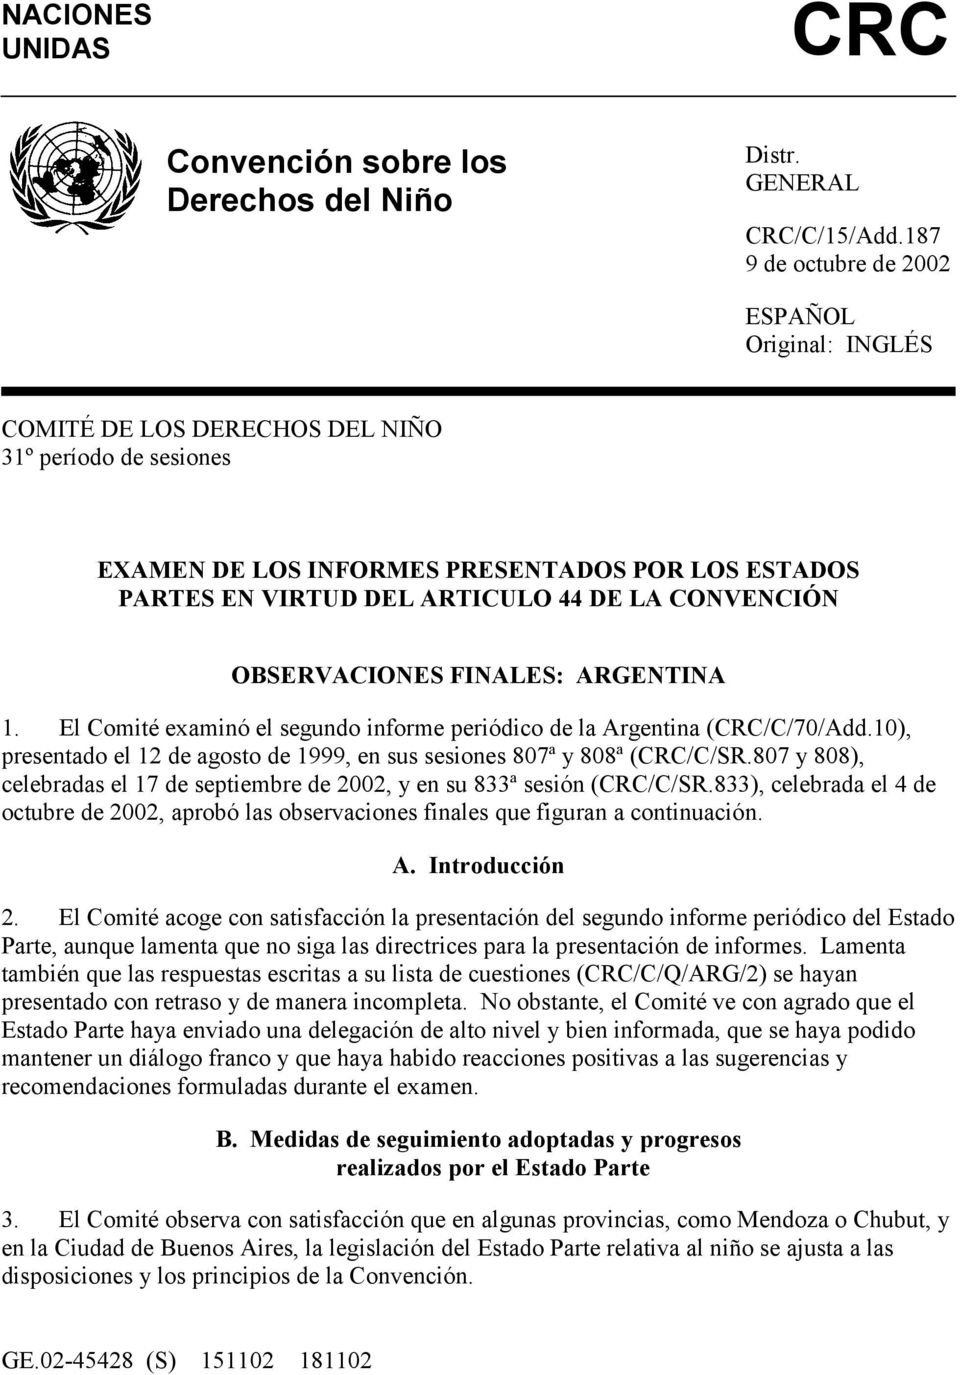 CONVENCIÓN OBSERVACIONES FINALES: ARGENTINA 1. El Comité examinó el segundo informe periódico de la Argentina (CRC/C/70/Add.